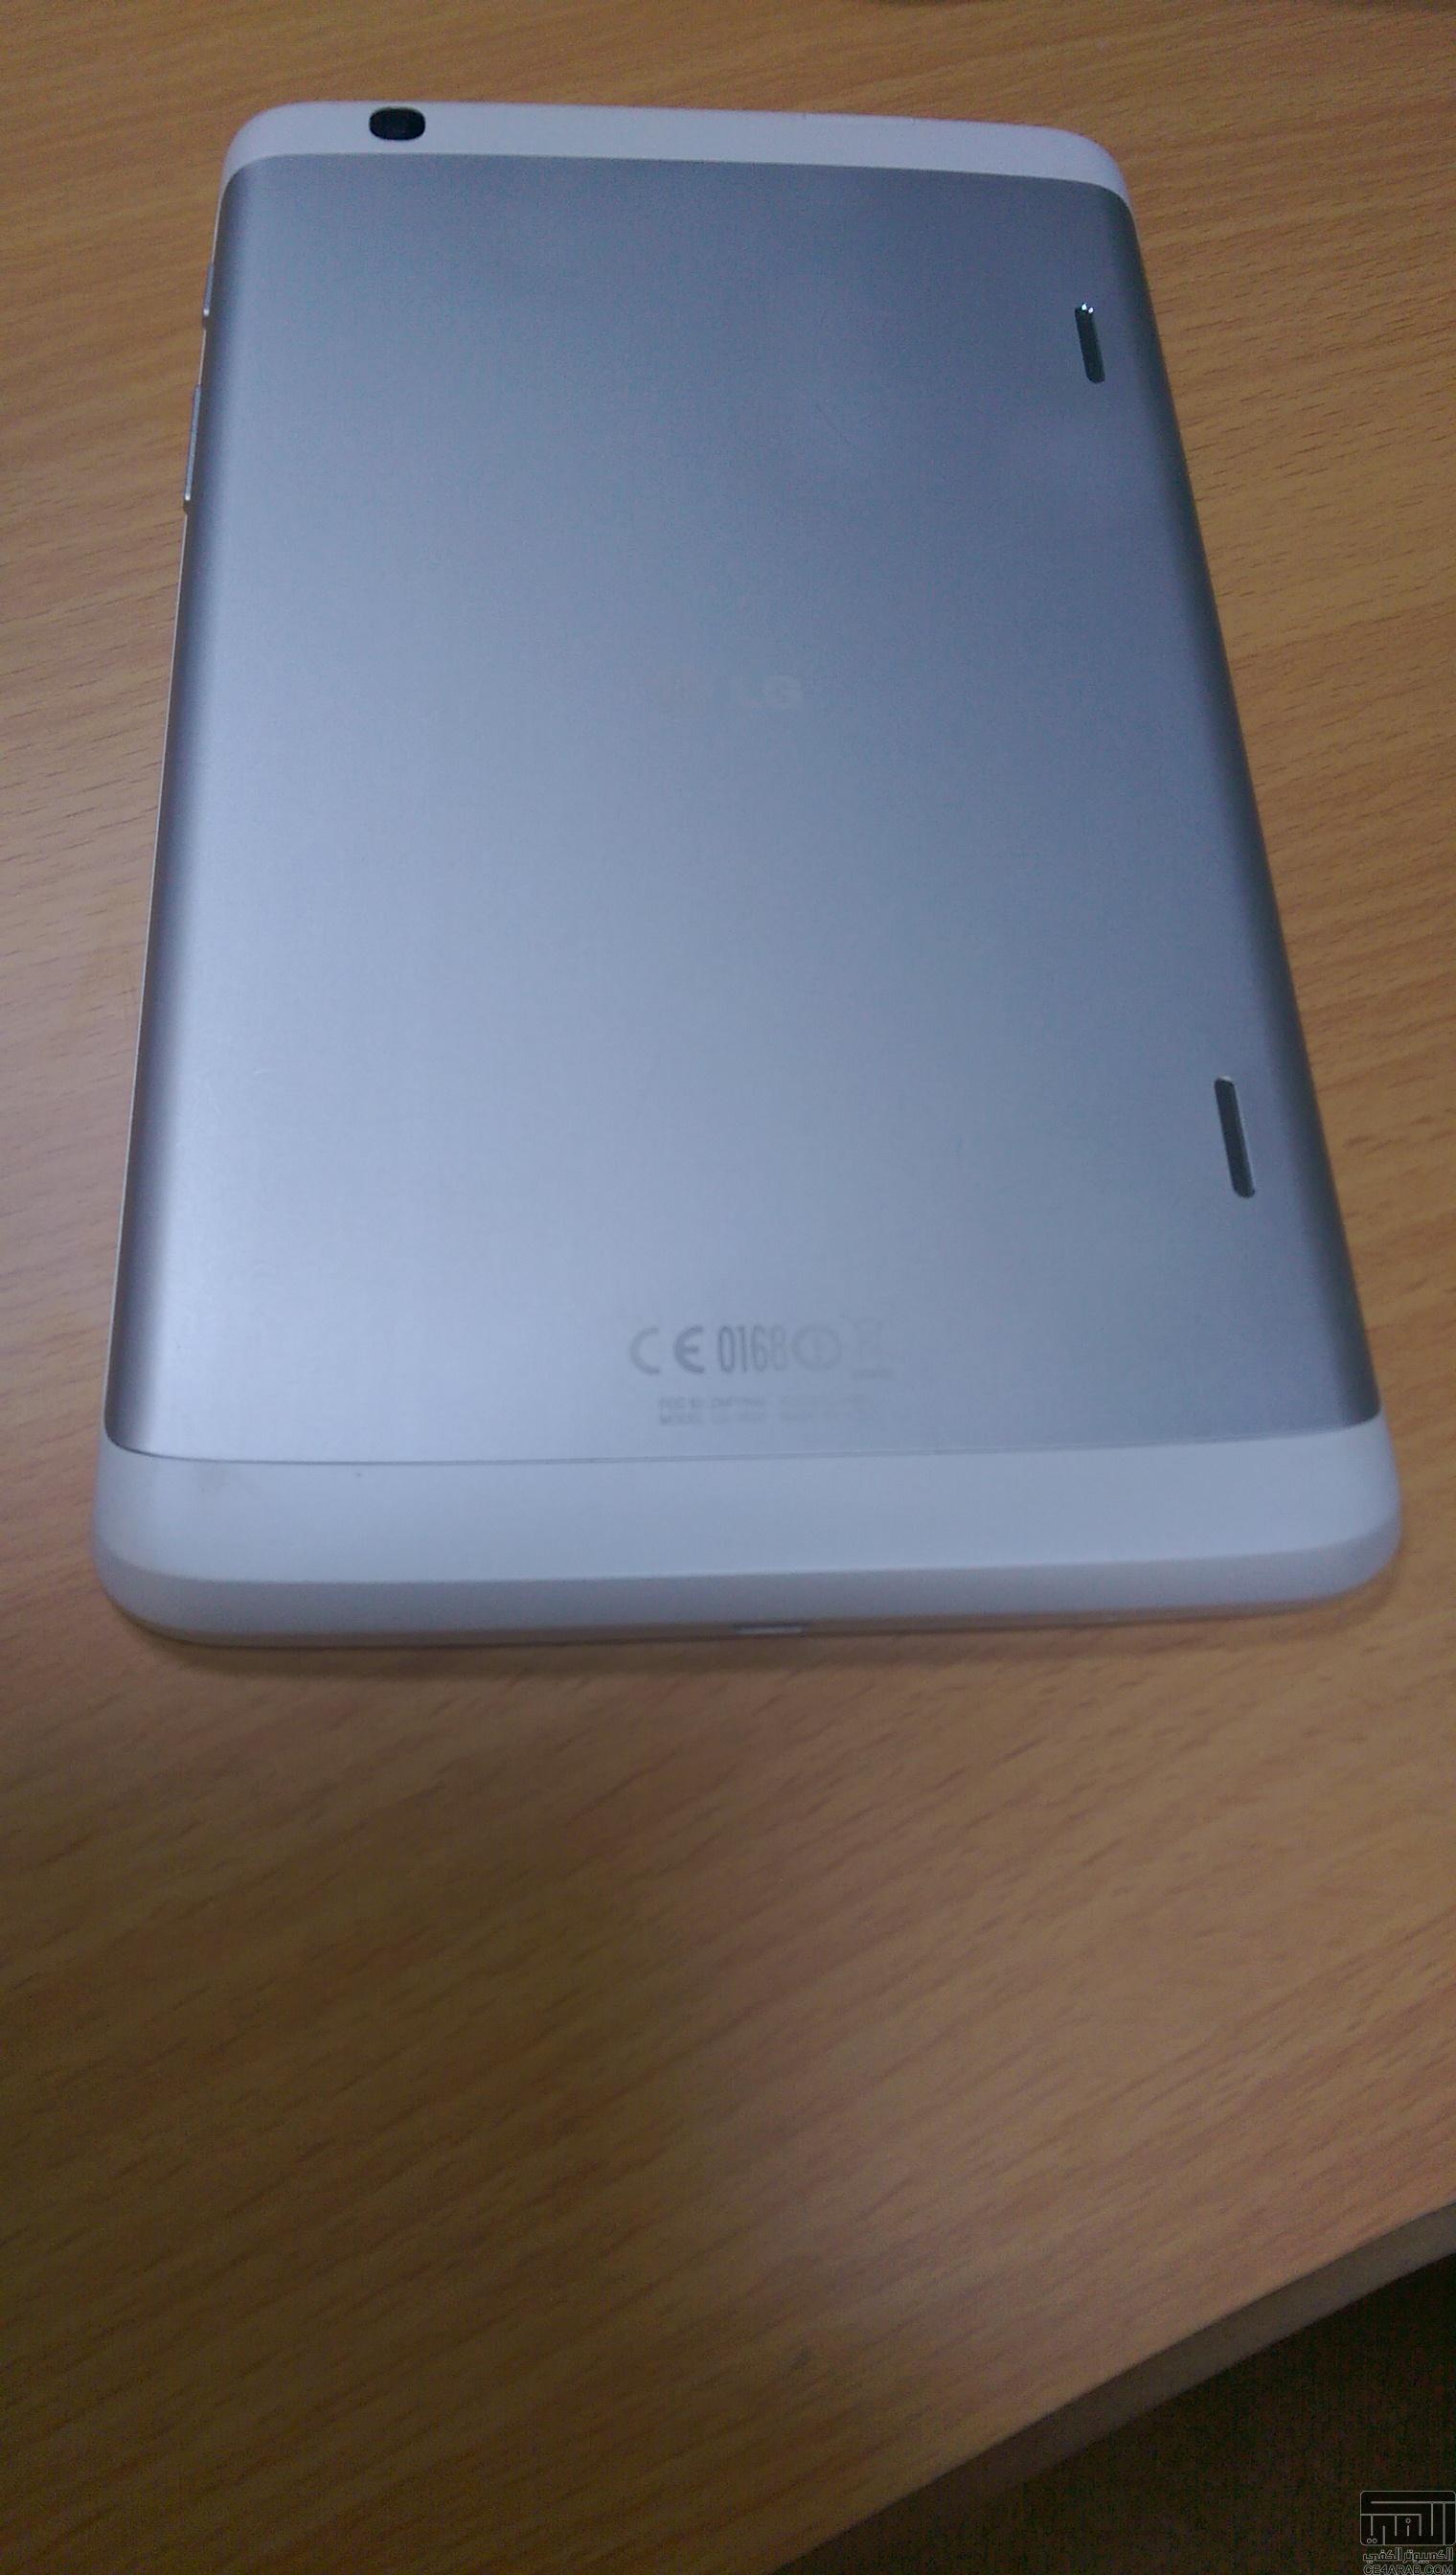 للبيع تاب lg g pad 8.3 لون أبيض استعمال خفيف جدااااا